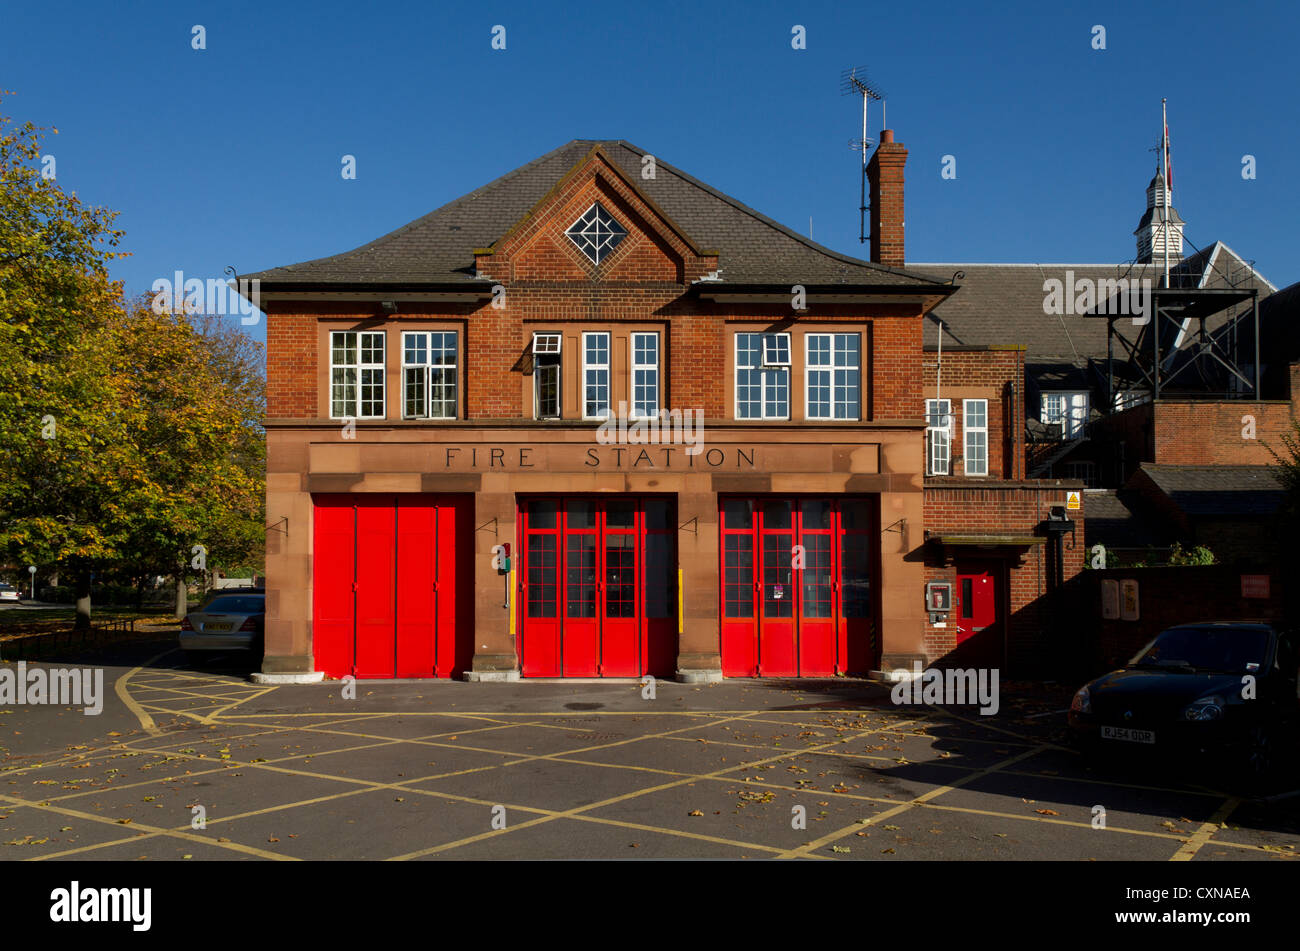 Fire Station, Mitcham, London, UK Stock Photo